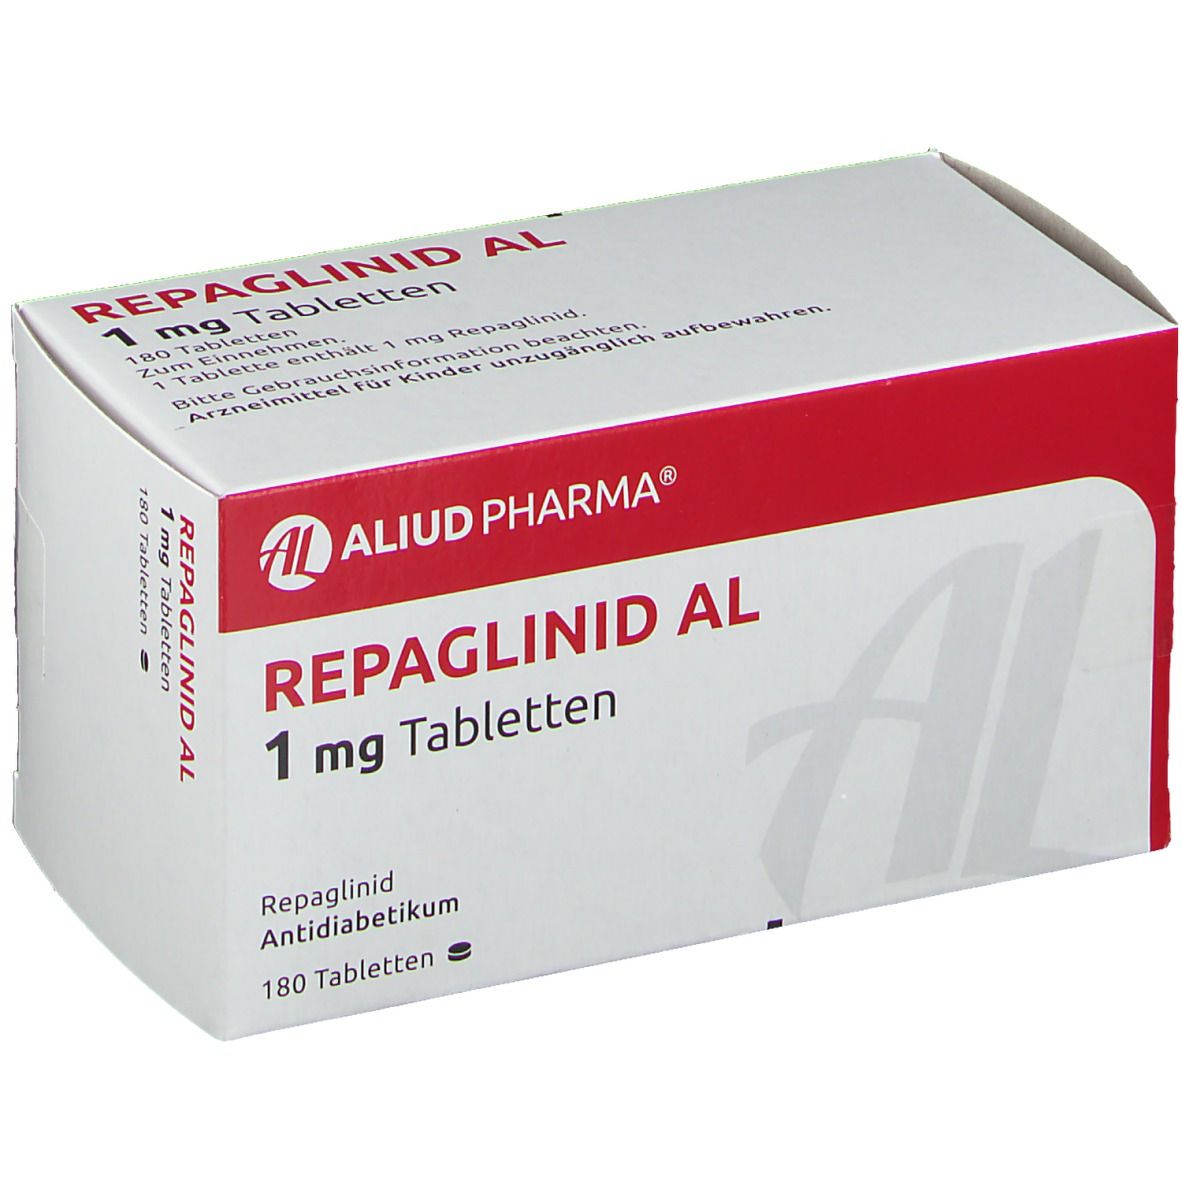 Repaglinid AL 1 mg